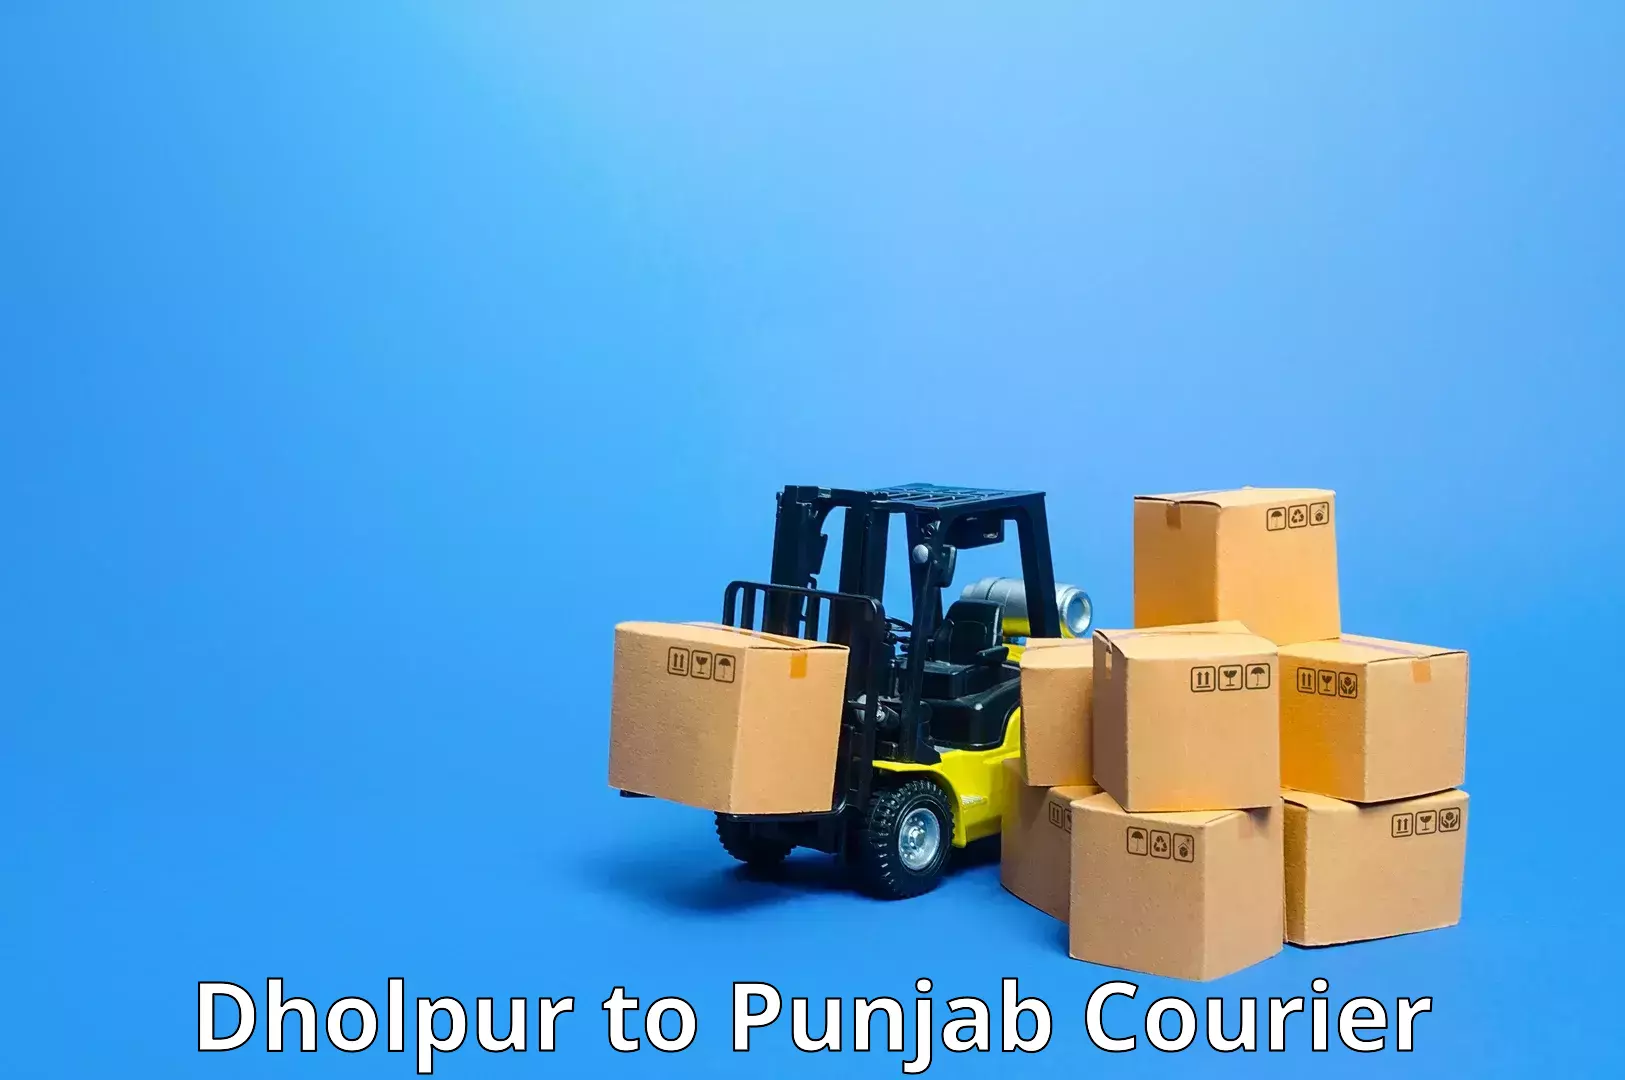 Courier service comparison Dholpur to Dhuri